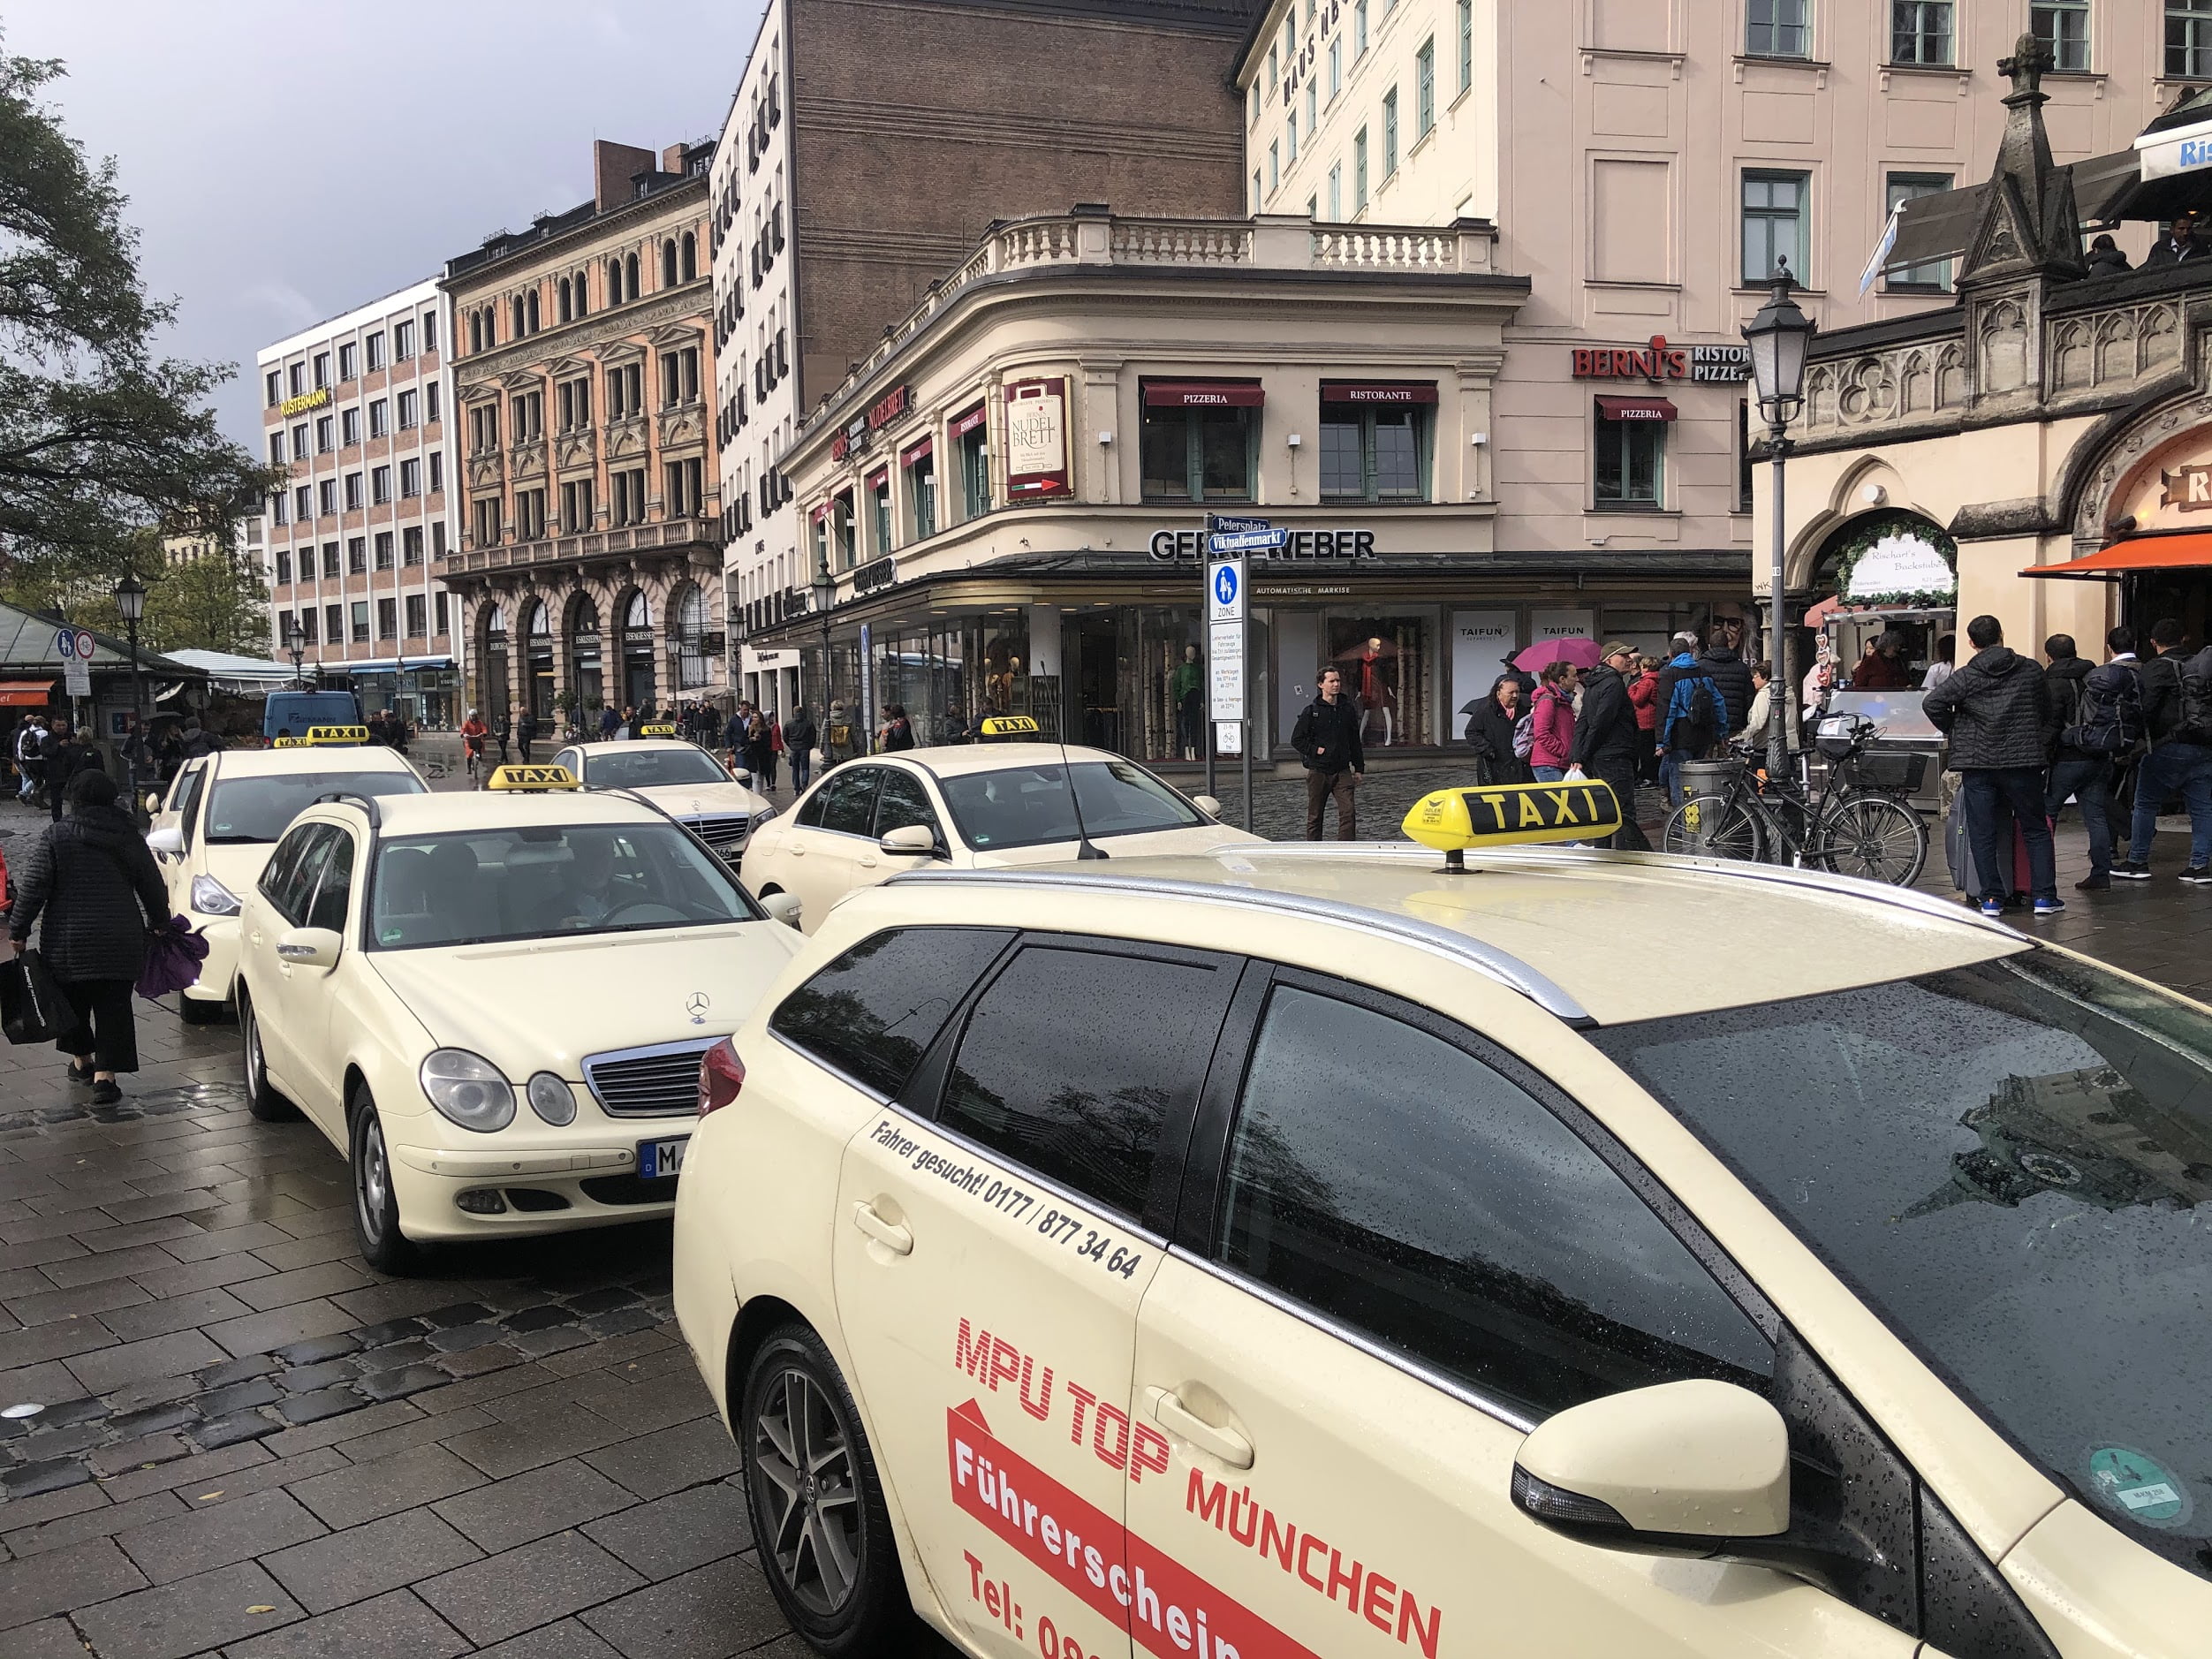 Beieren siket taksysjauffeurs mei rydbewiis foar frachtweinen